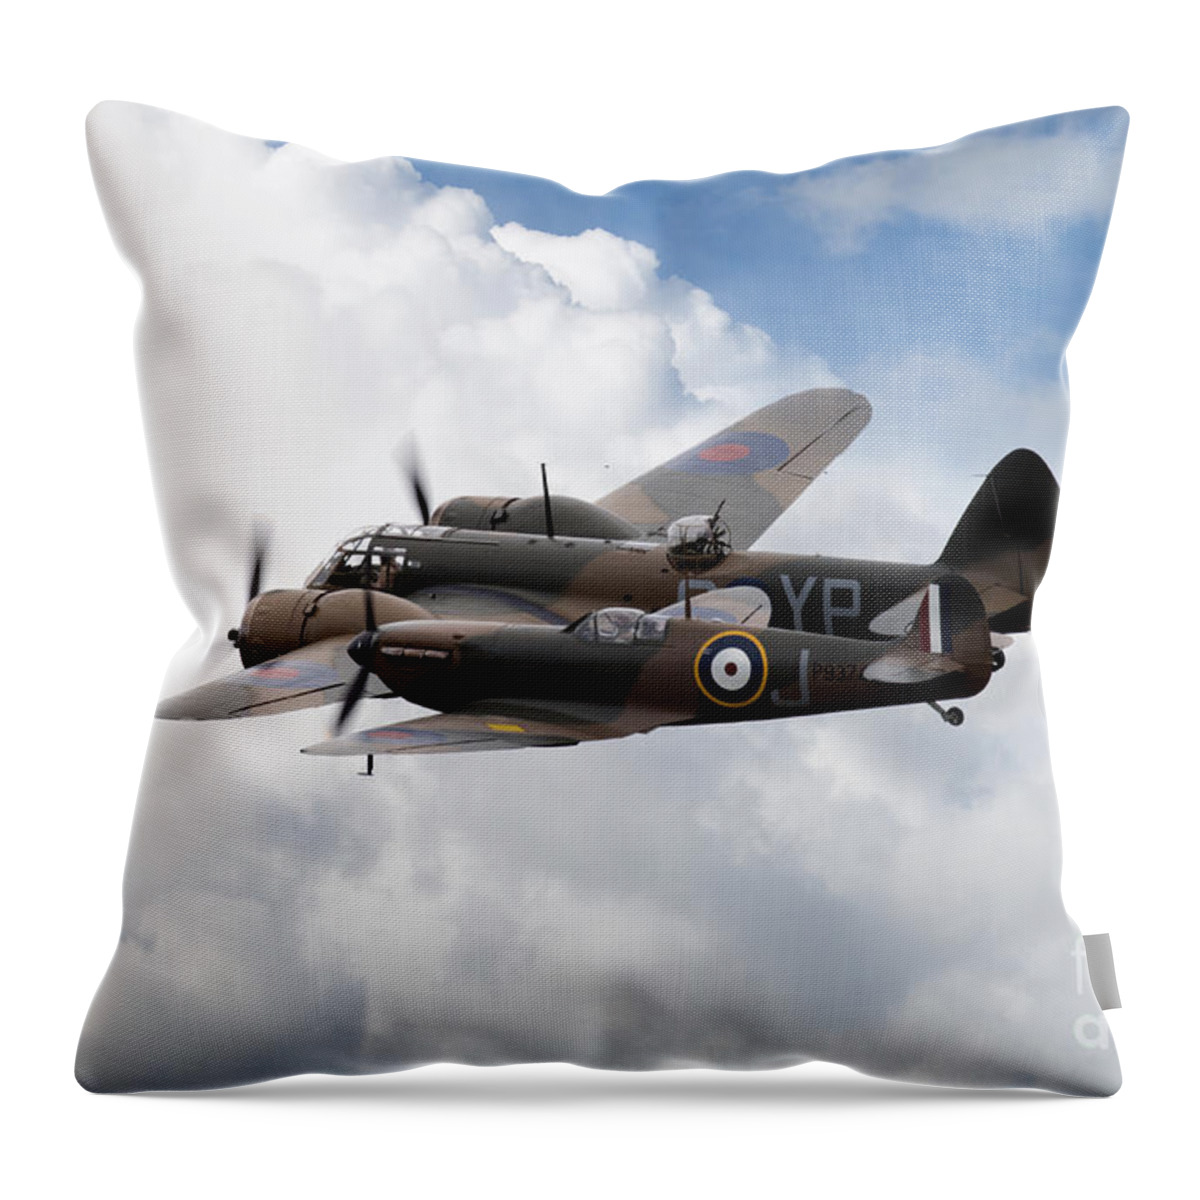 Bristol Throw Pillow featuring the digital art Spitfire and Blenheim by Airpower Art